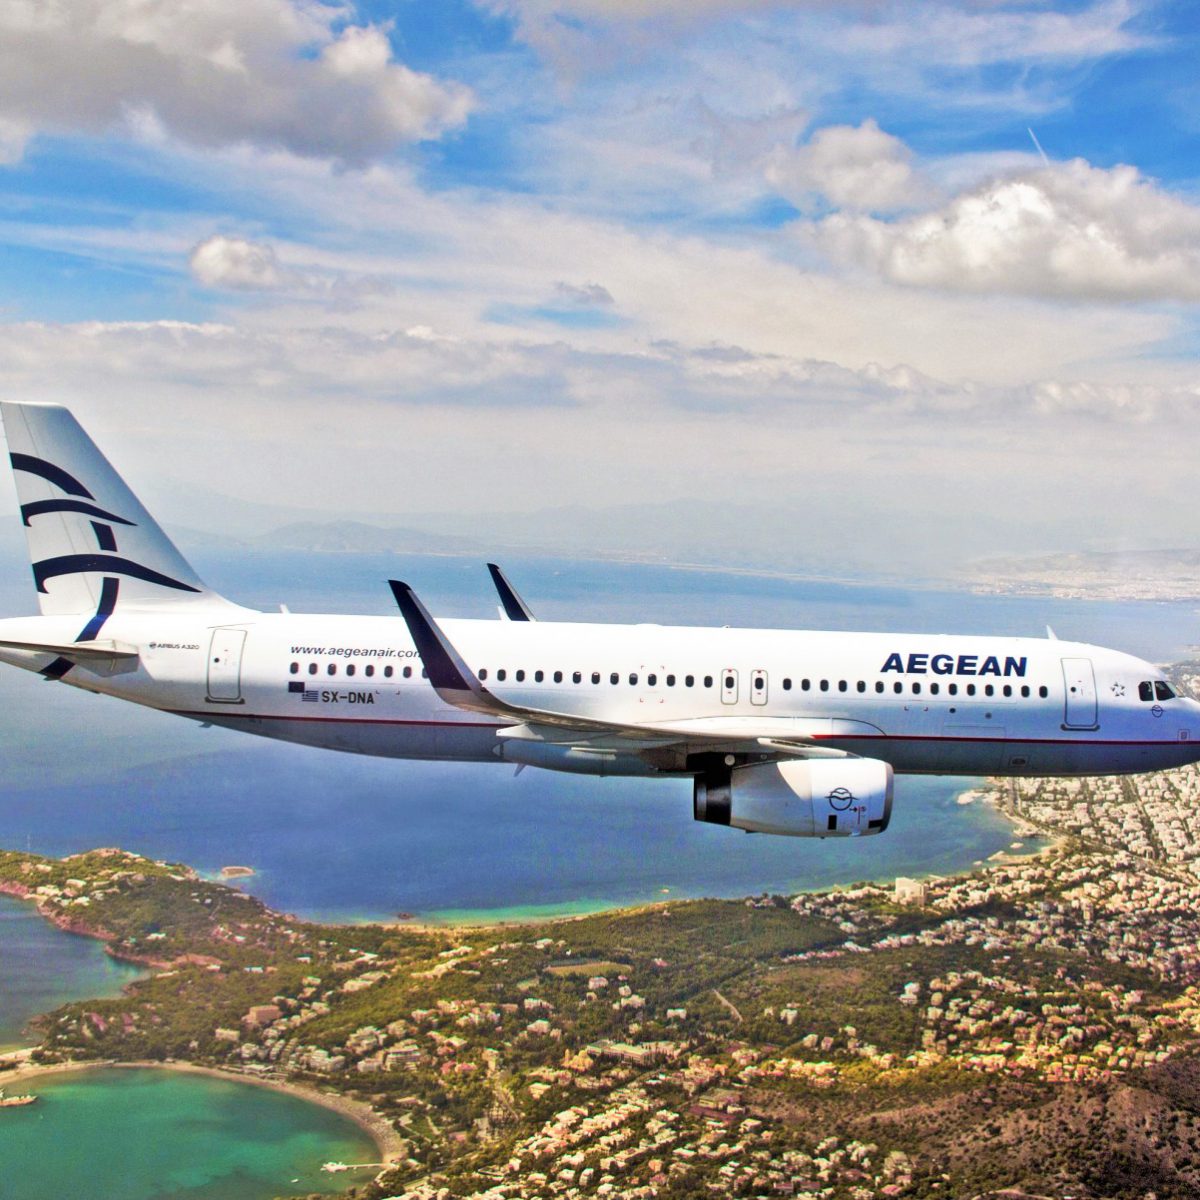 Η Aegean “ξαναχτυπά” με νέα προσφορά: Έκπτωση έως 30% για ταξίδια στην Ελλάδα!